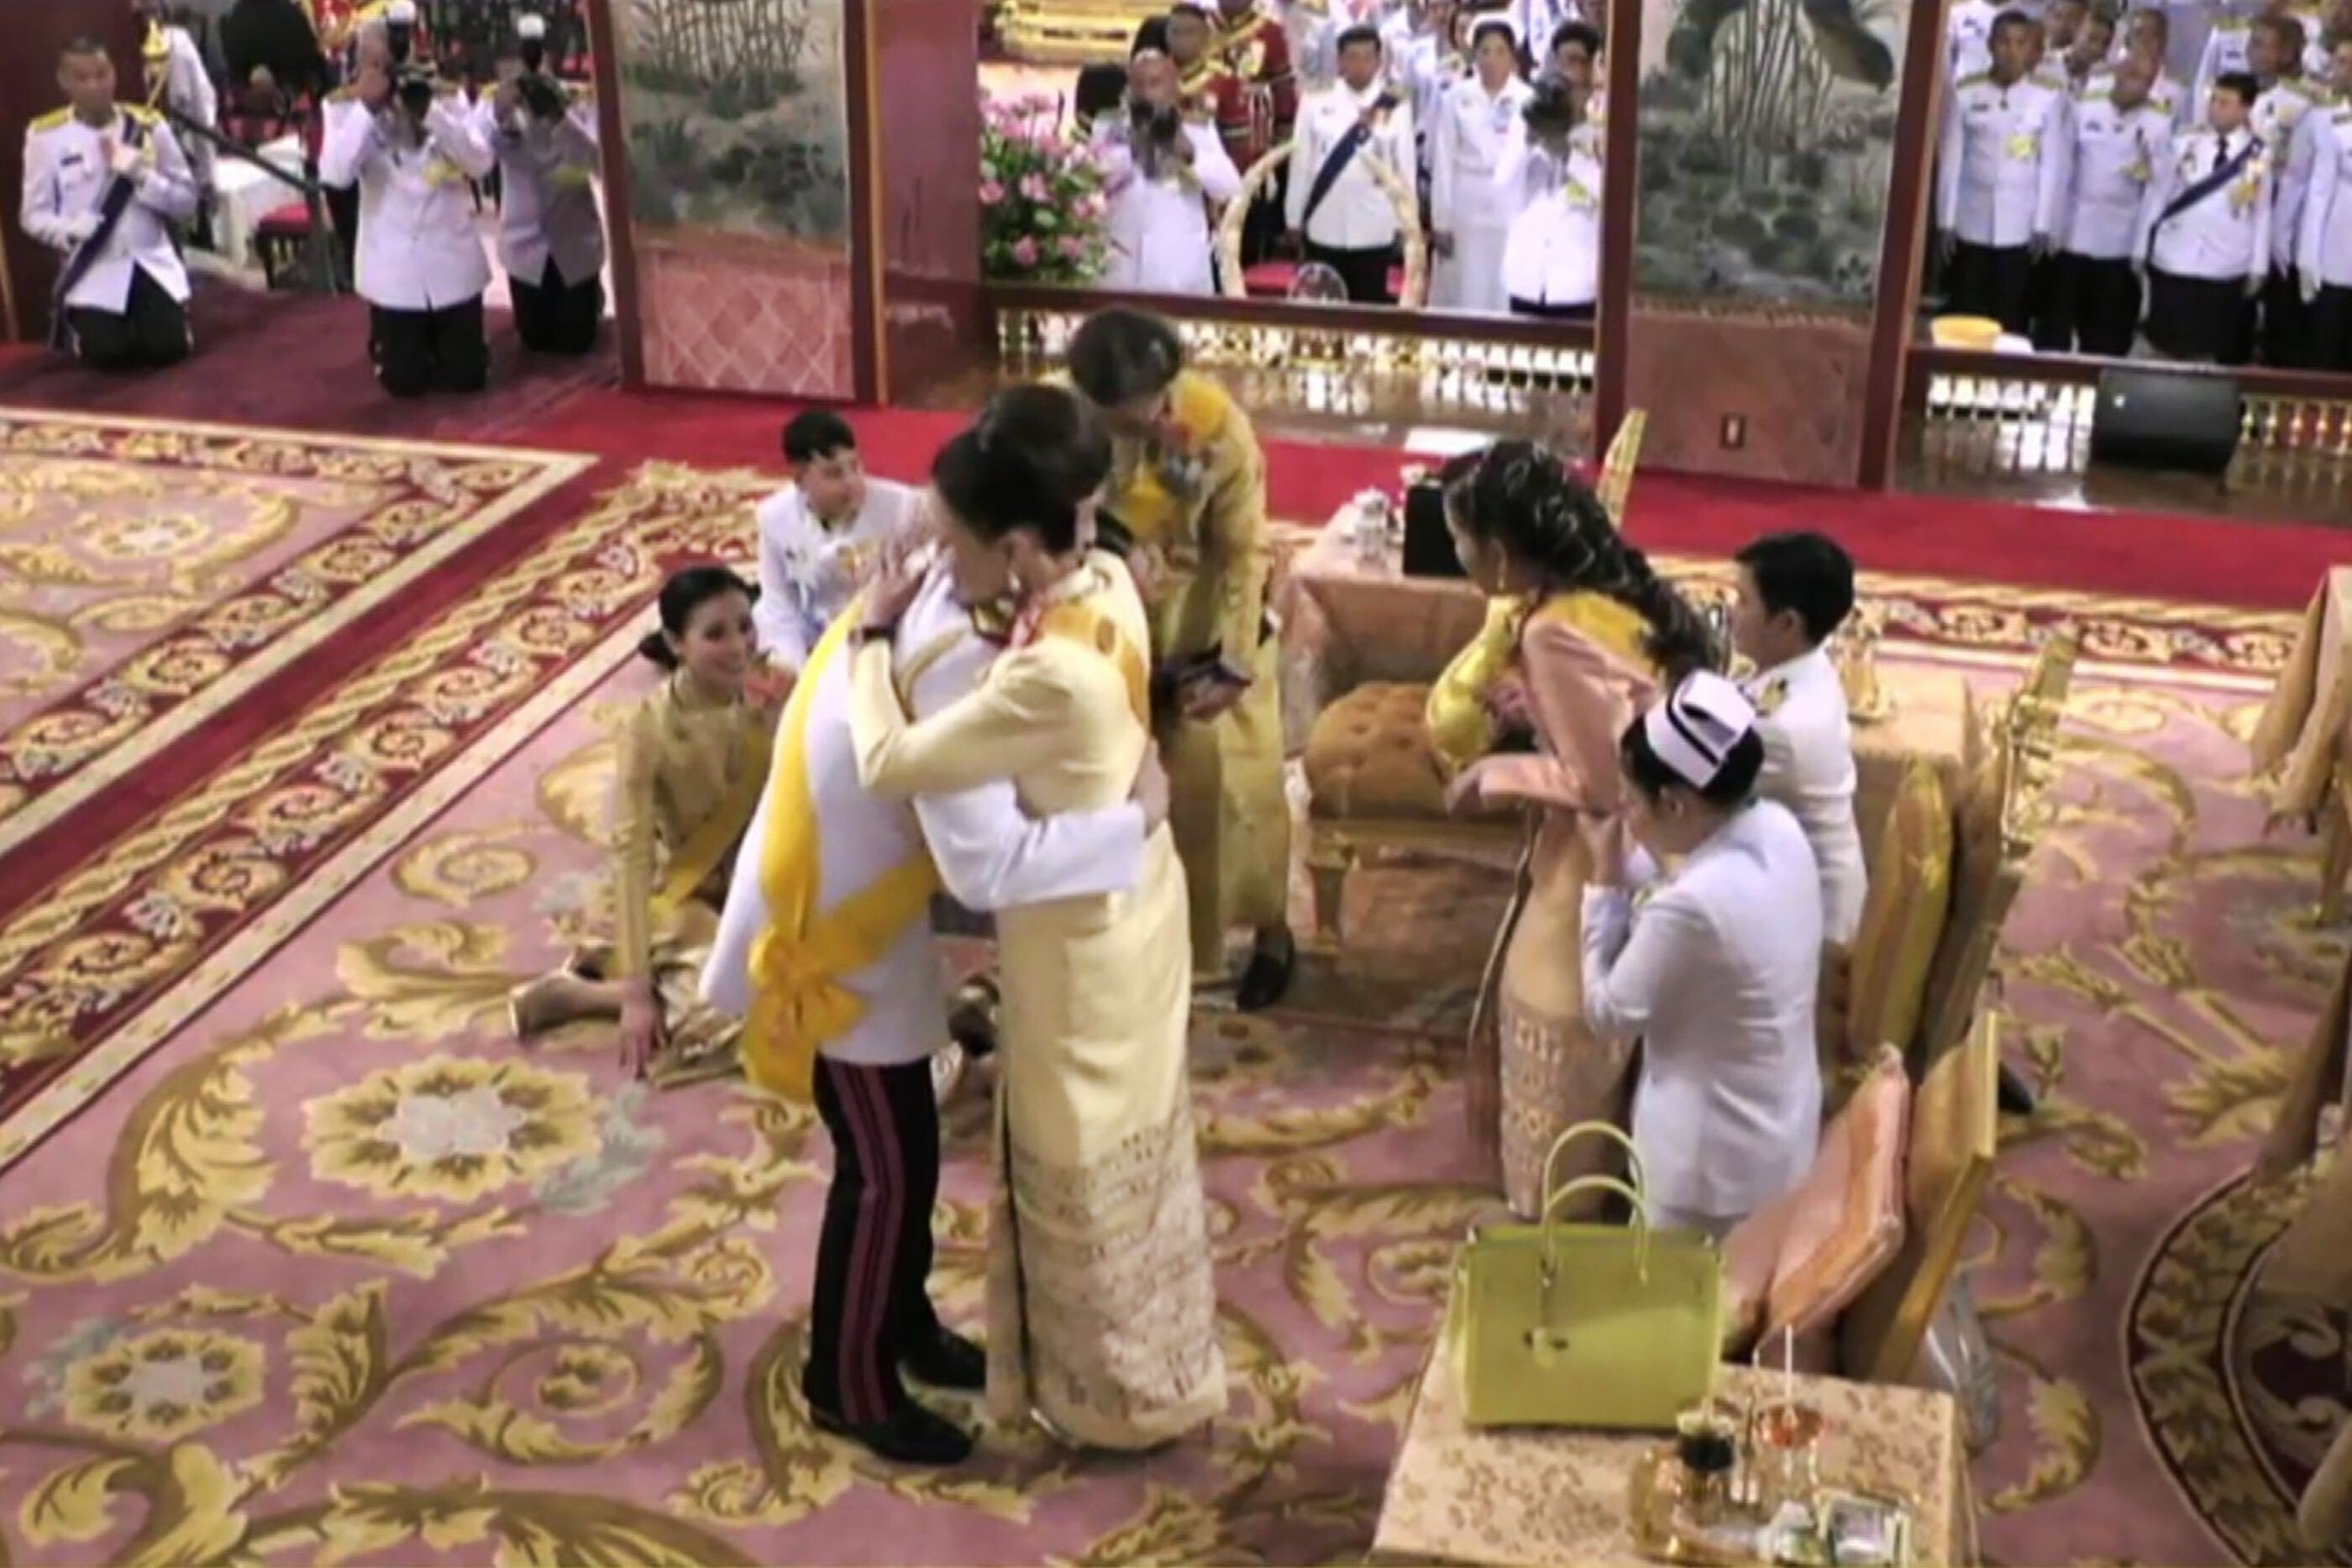 Thailand’s King Maha Vajiralongkorn hugs his sister Princess Ubolratana – whose candidacy as prime minister he previously blocked – during his coronation in May 2019. Photo: AFP